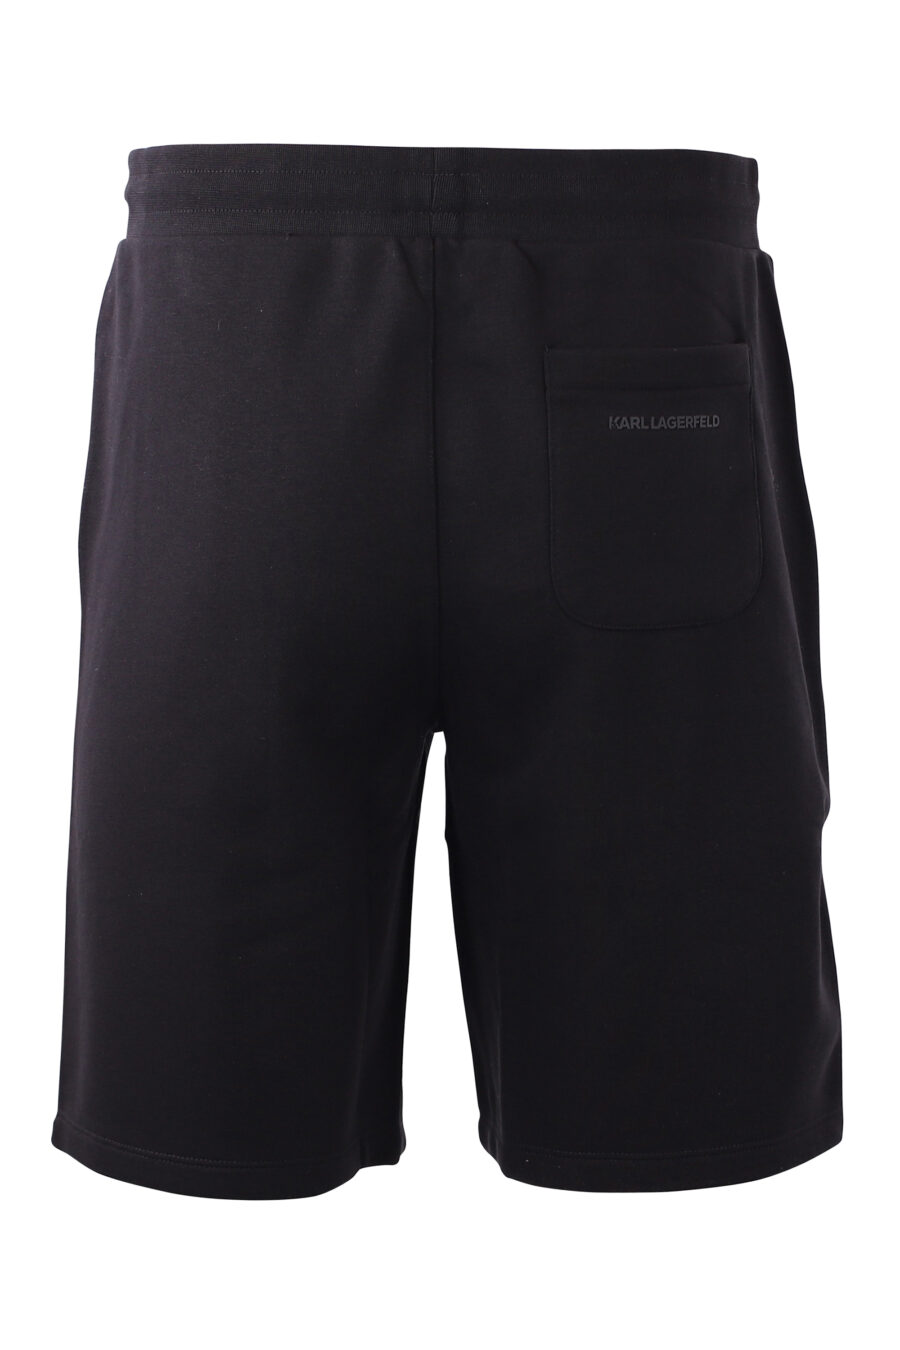 Pantalón corto de chandal negro con logo azul - IMG 8585